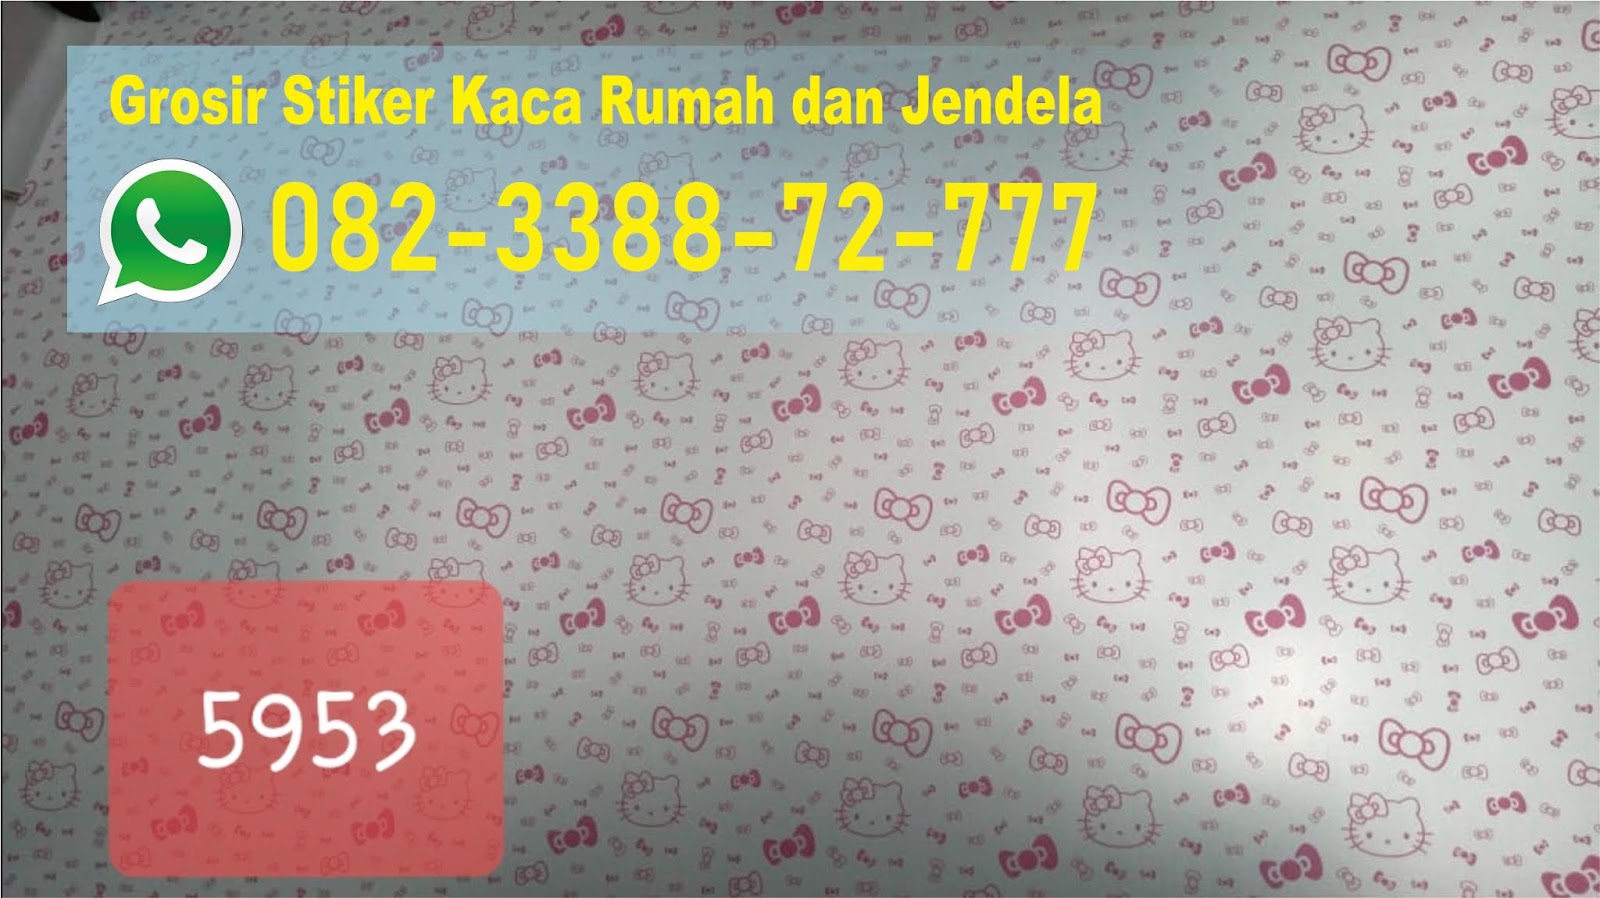 35 Trend Terbaru Jual  Stiker  Kaca  Jendela  Di Surabaya  